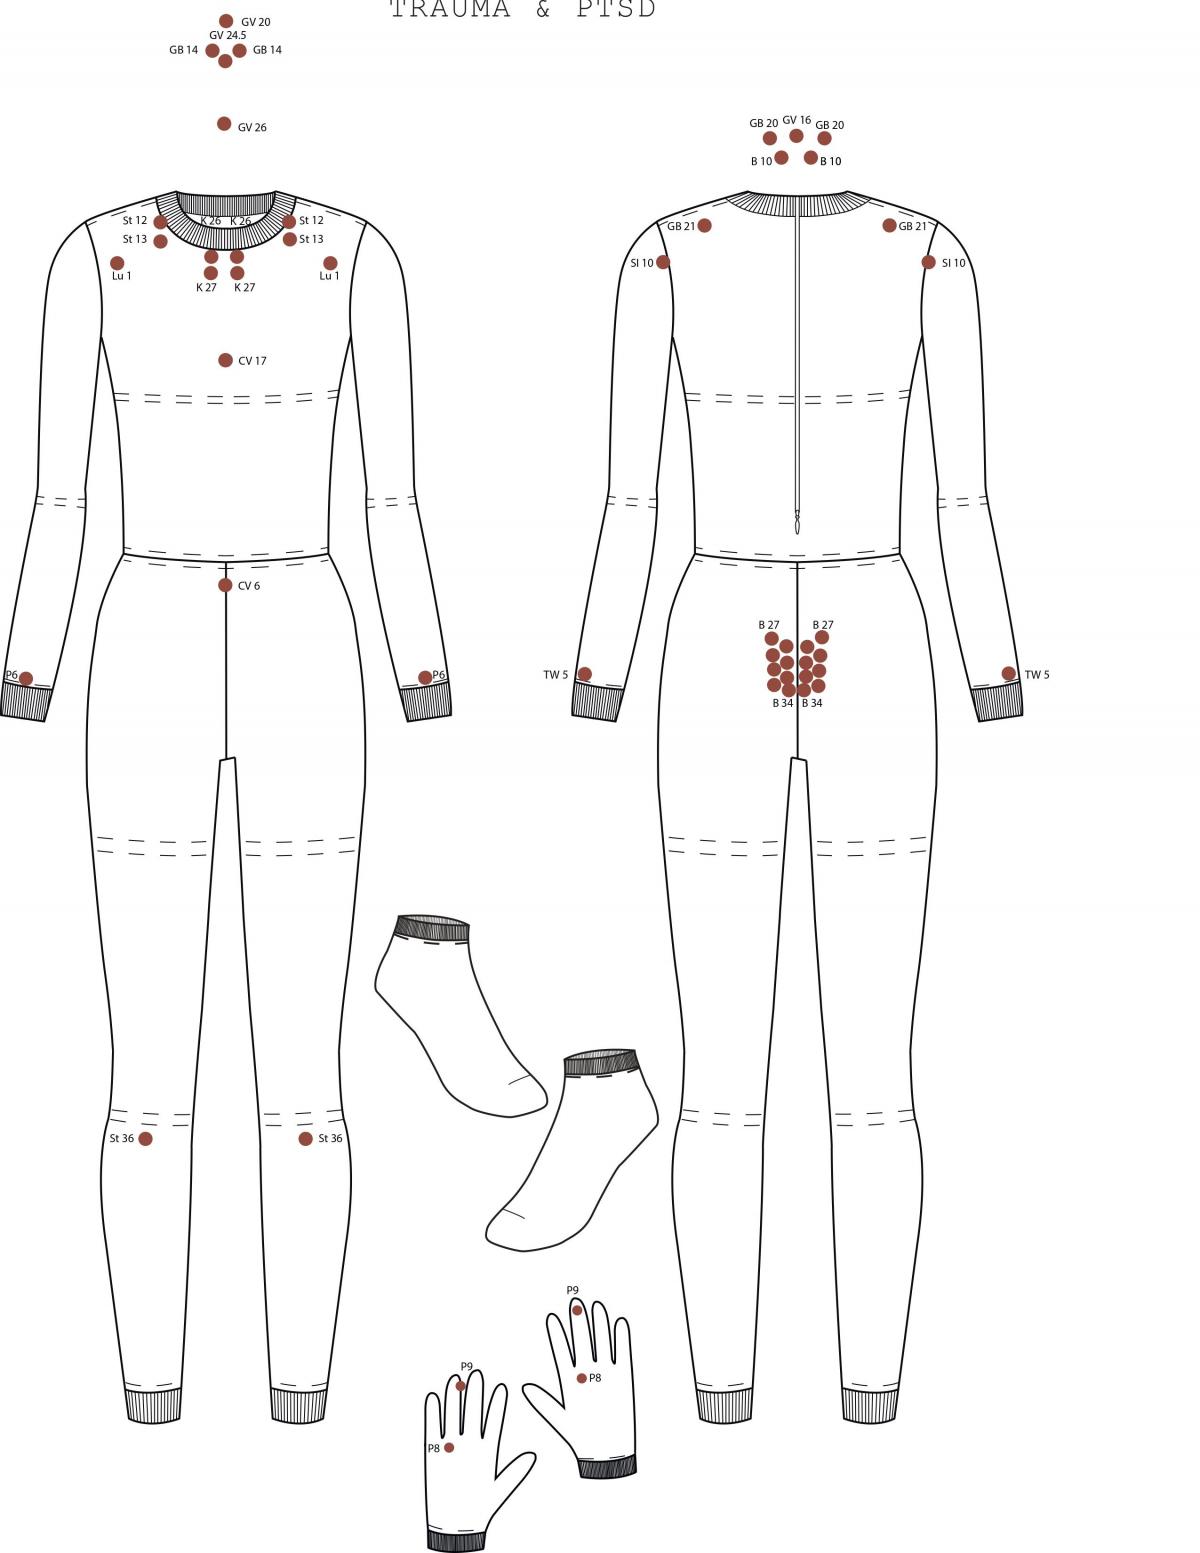 A detailed, full body diagram of Laura Deschl's healing garment